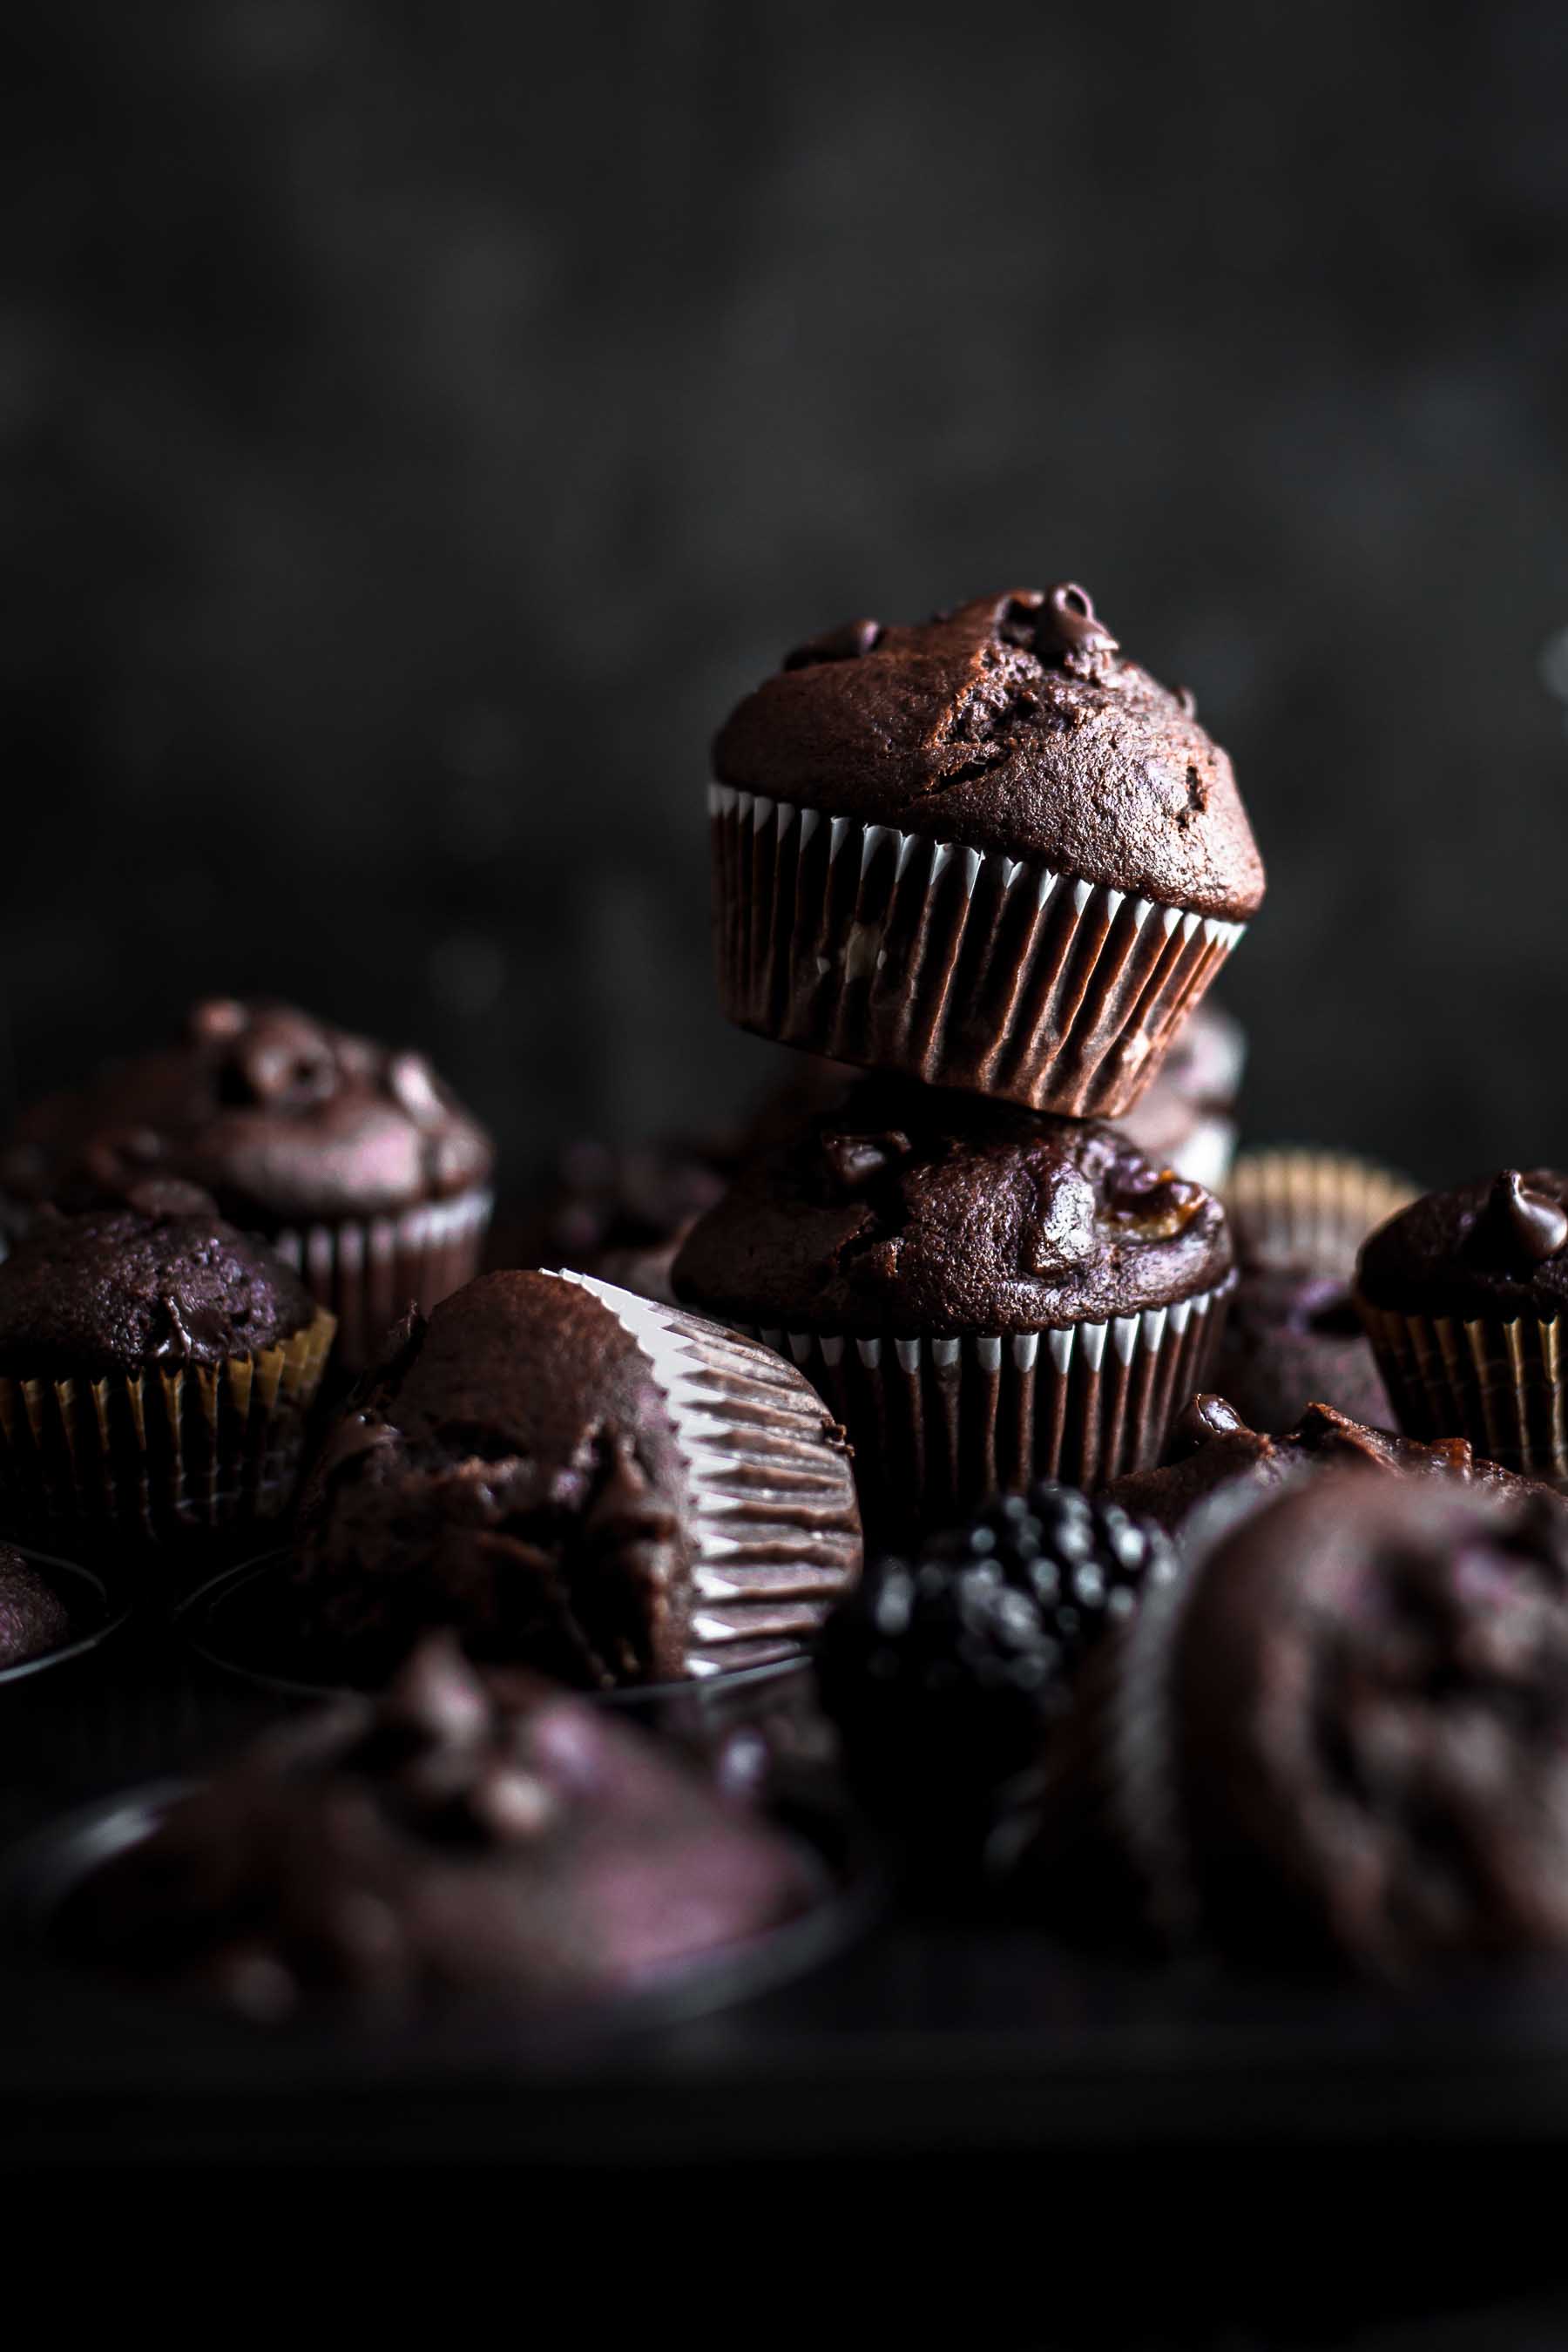 a half dozen muffins on a dark background